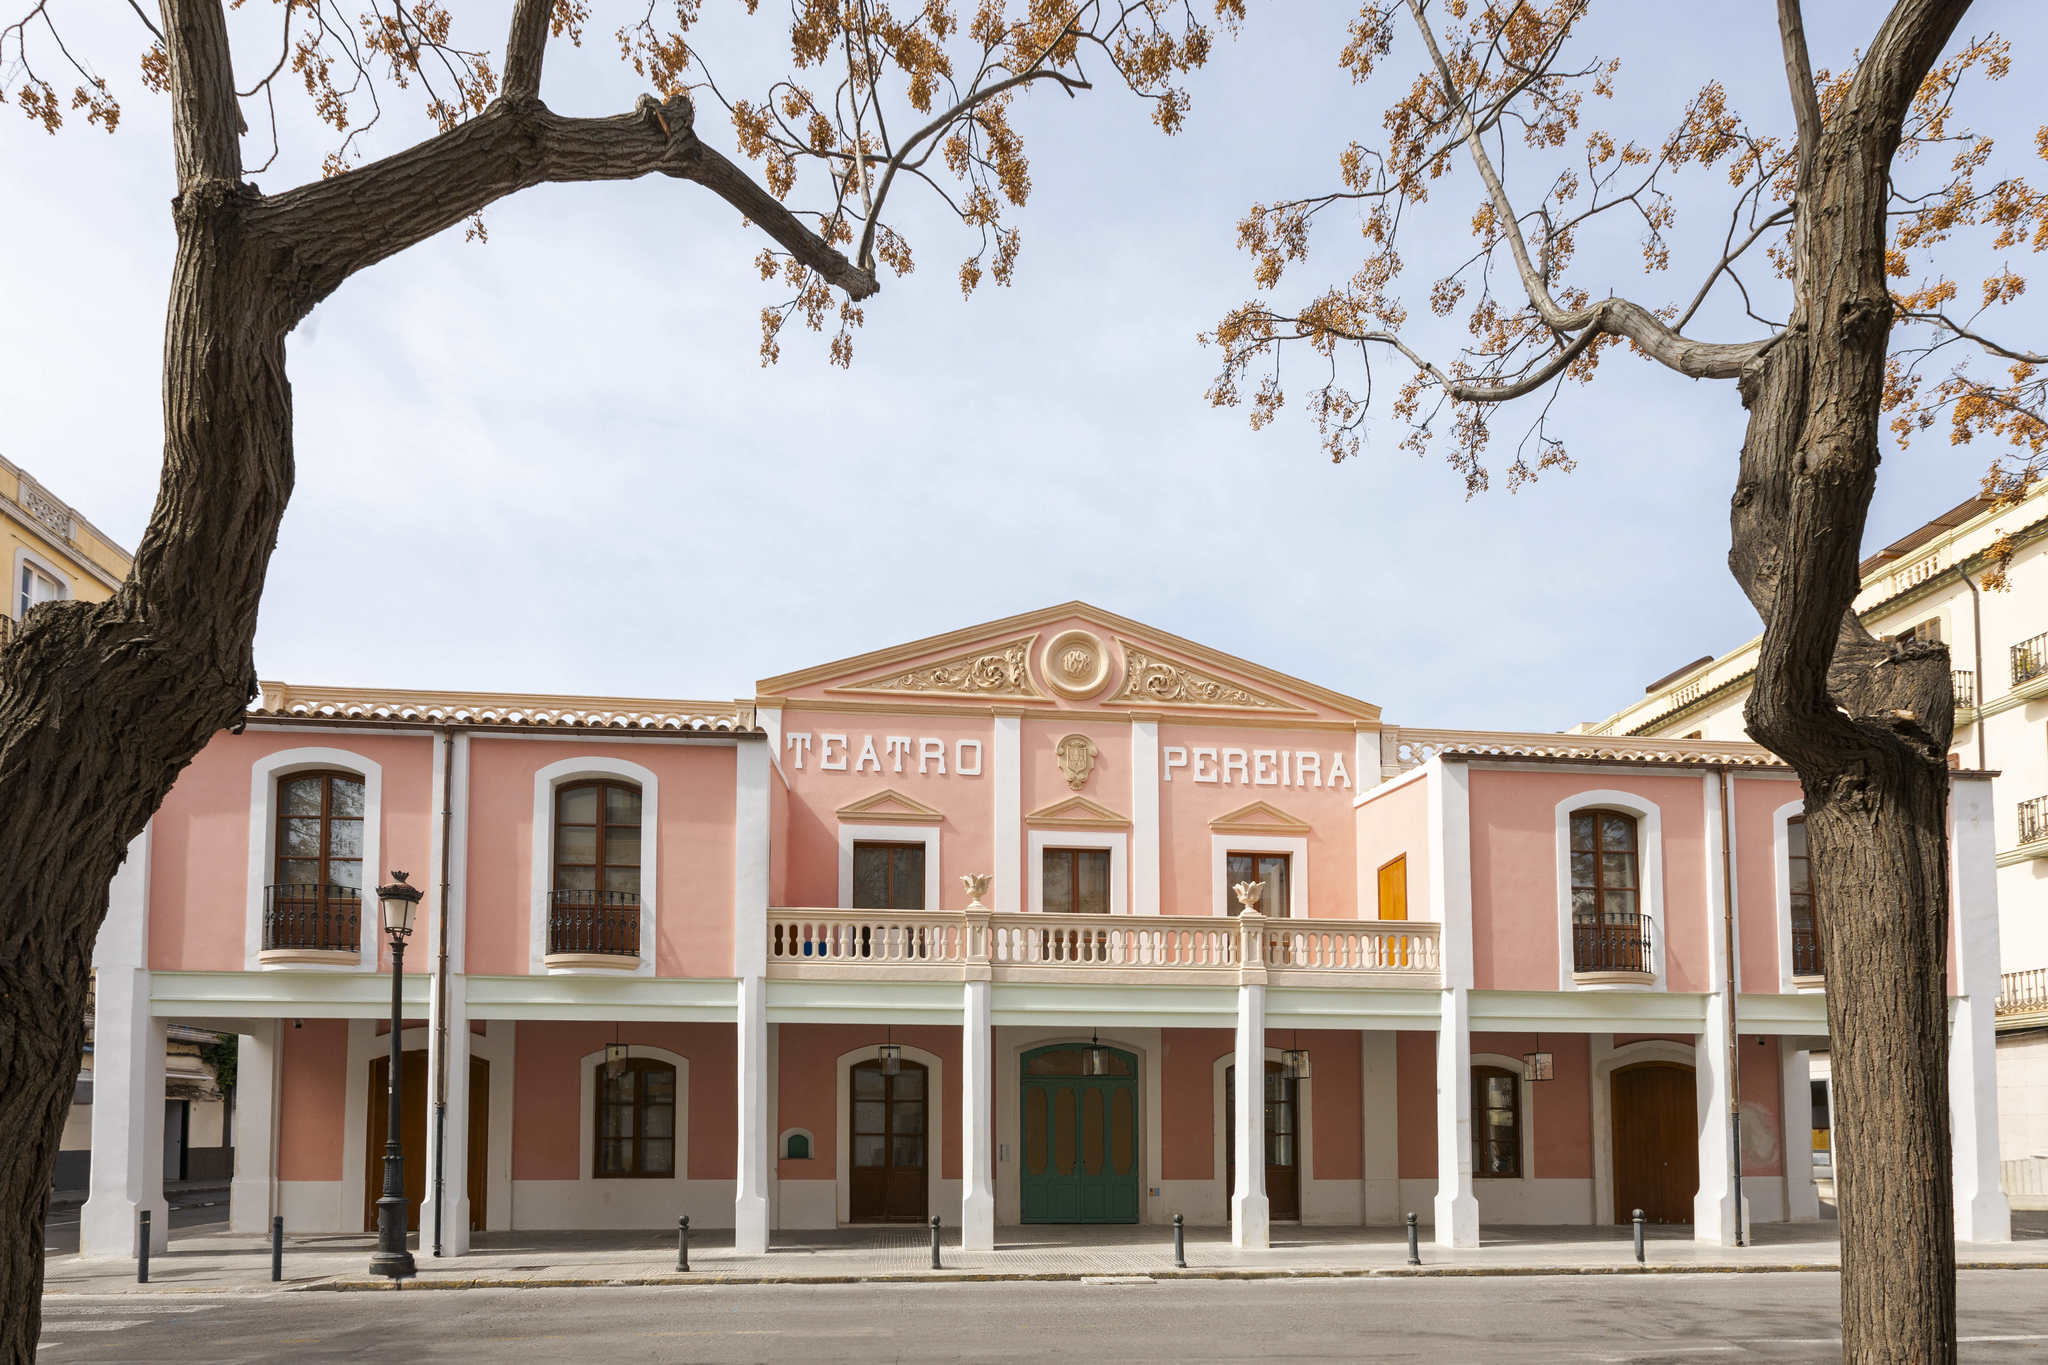 Tras una rehabilitaci�n integral, el Teatro Pereyra estrena cartel el 18 de mayo.